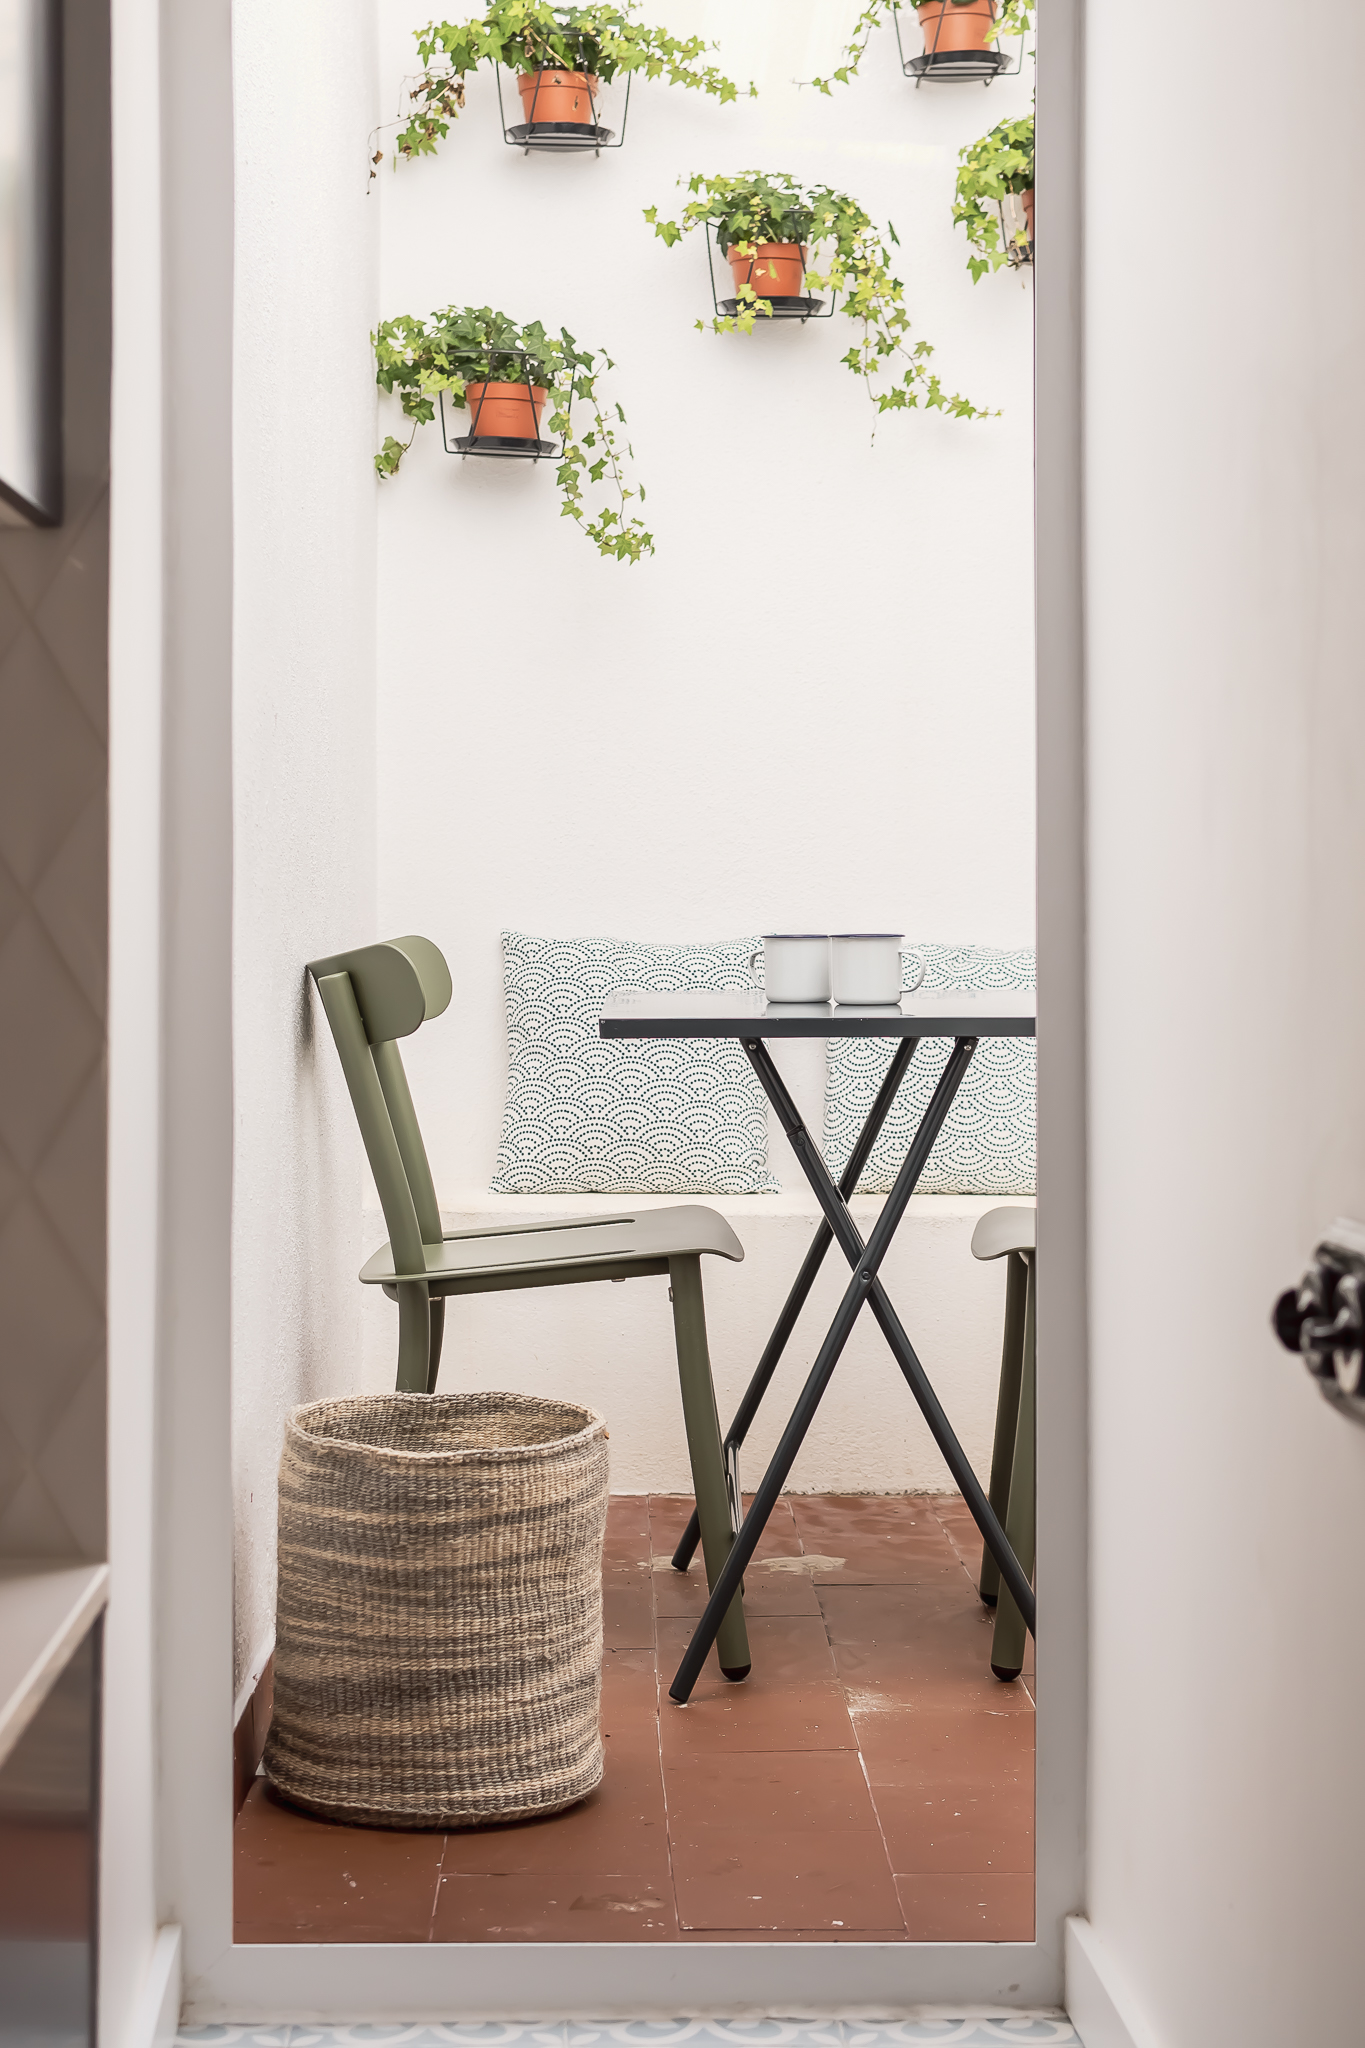 Reabilitação de apartamento em alfama - remodelação e decoração de pátio pequeno e zona exterior com bancos verdes